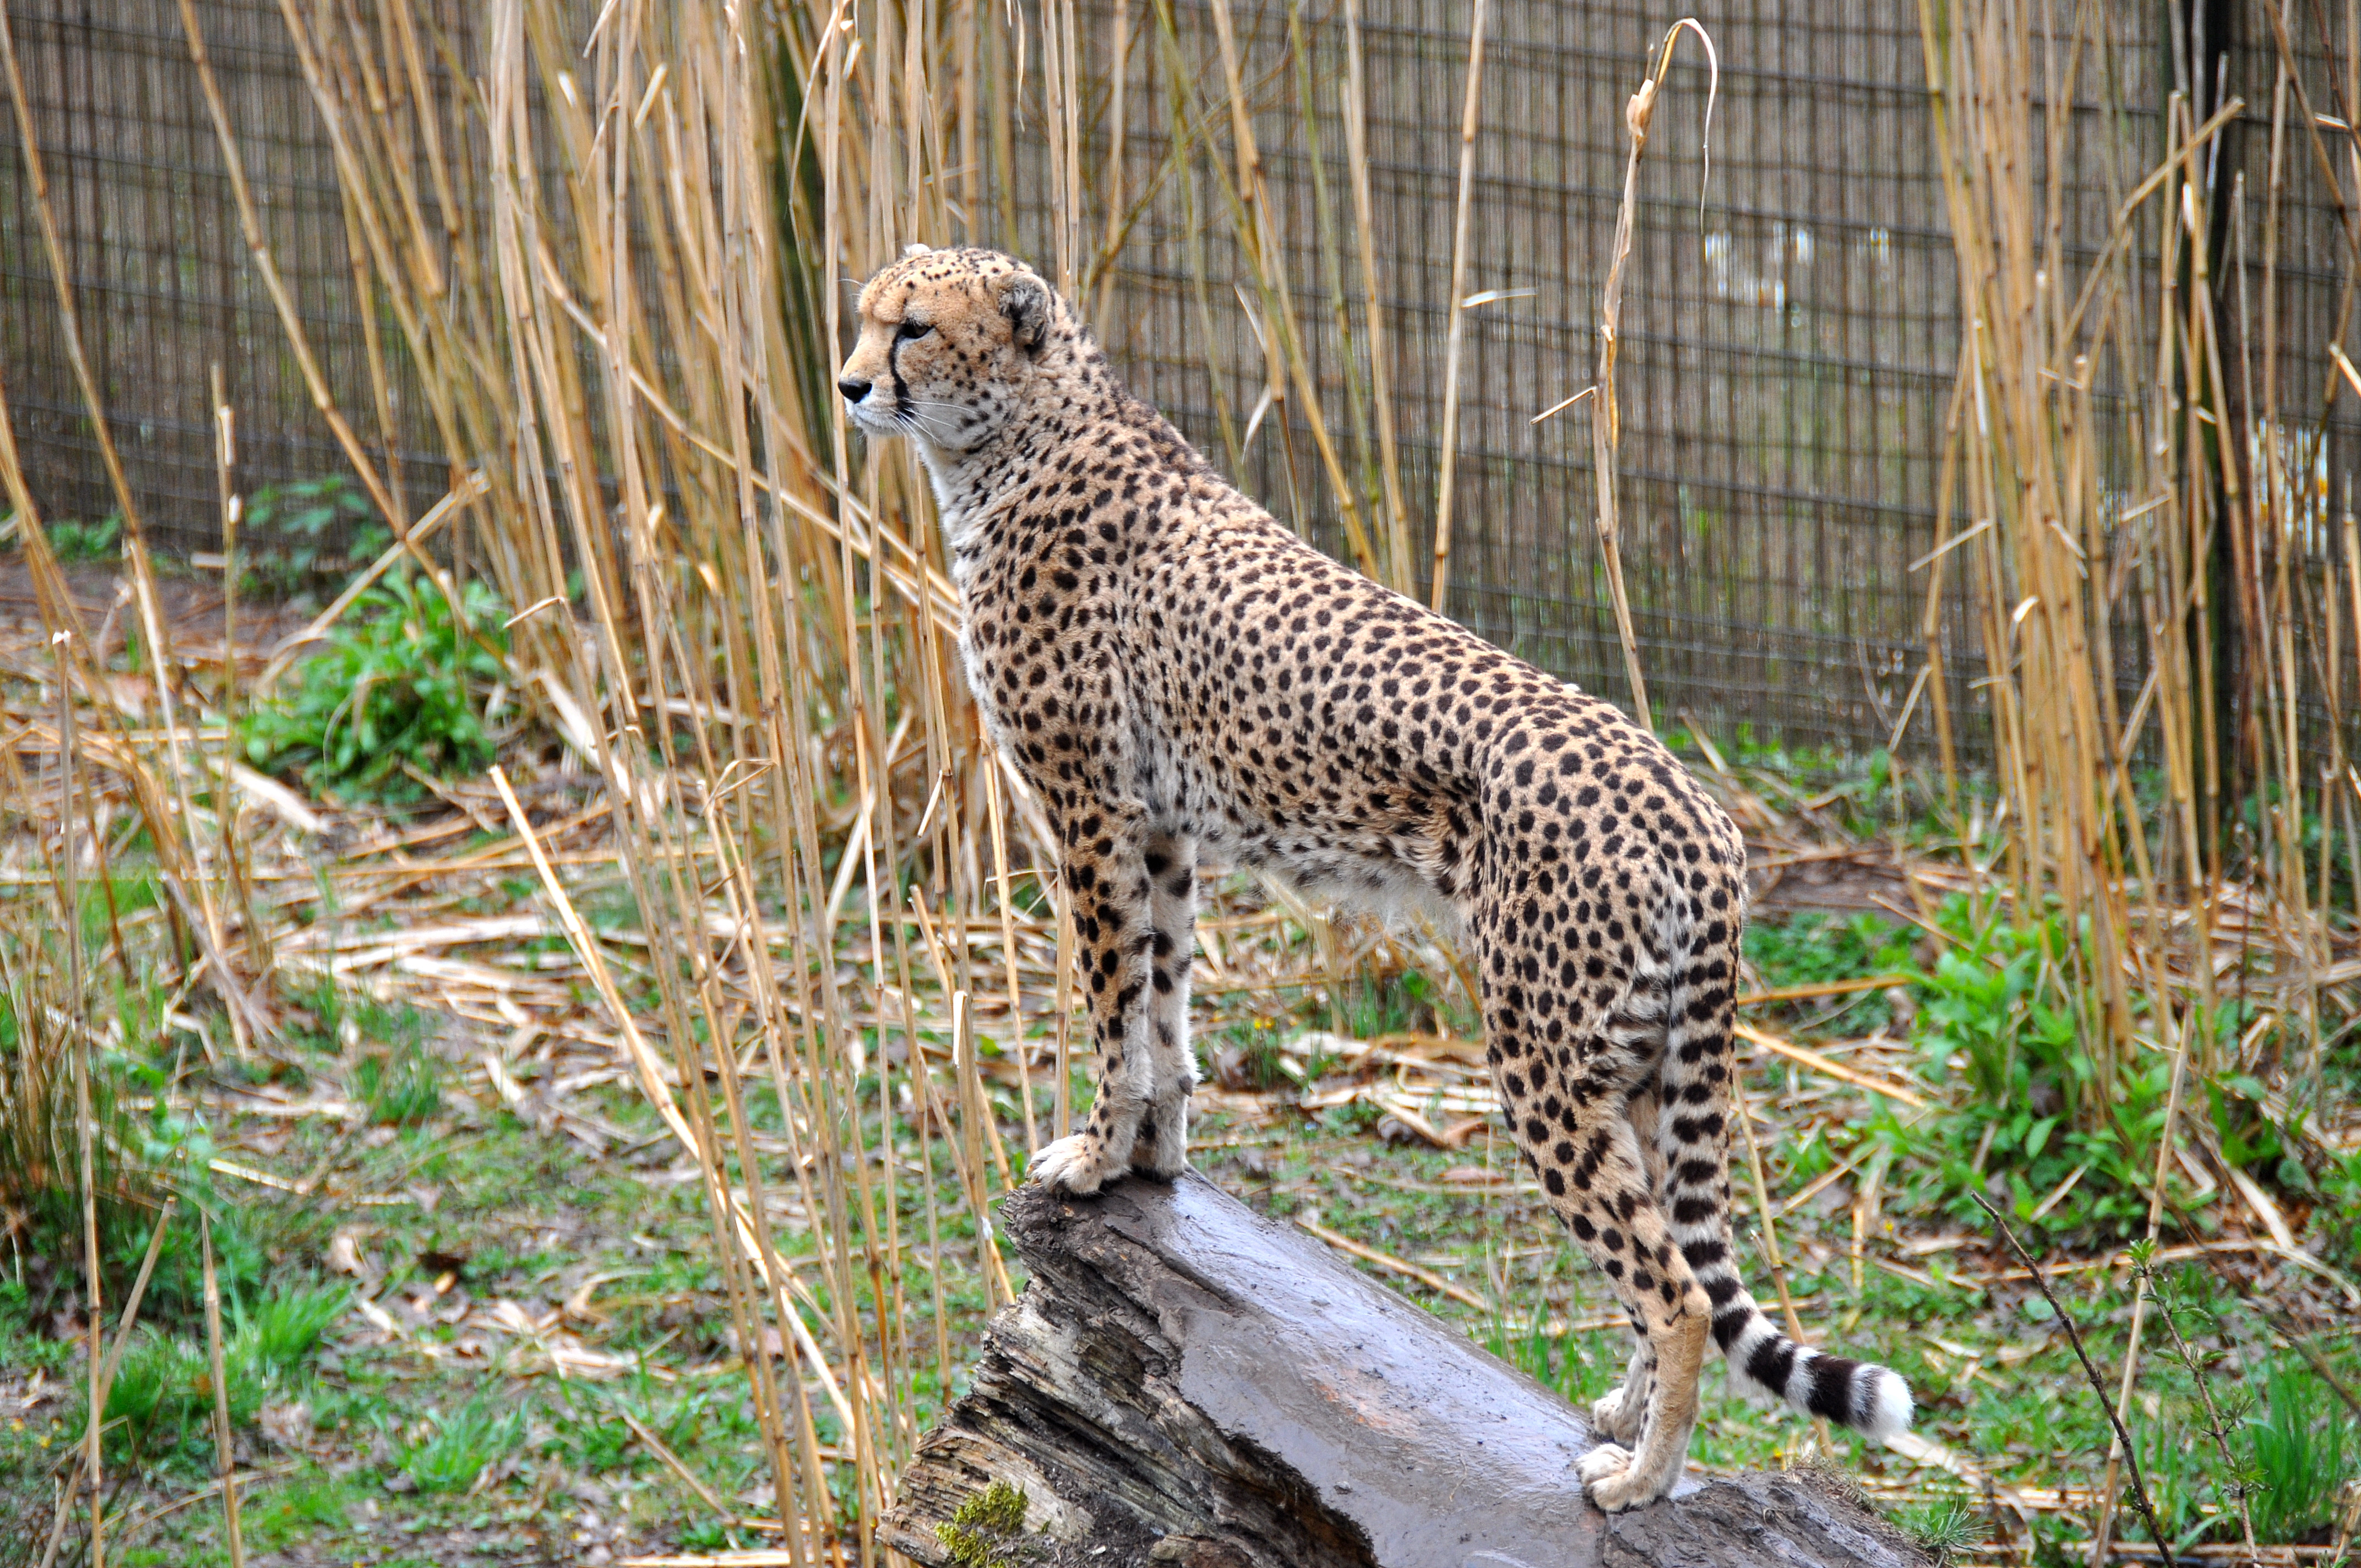 Обои Cheetah Chester Zoo England на рабочий стол